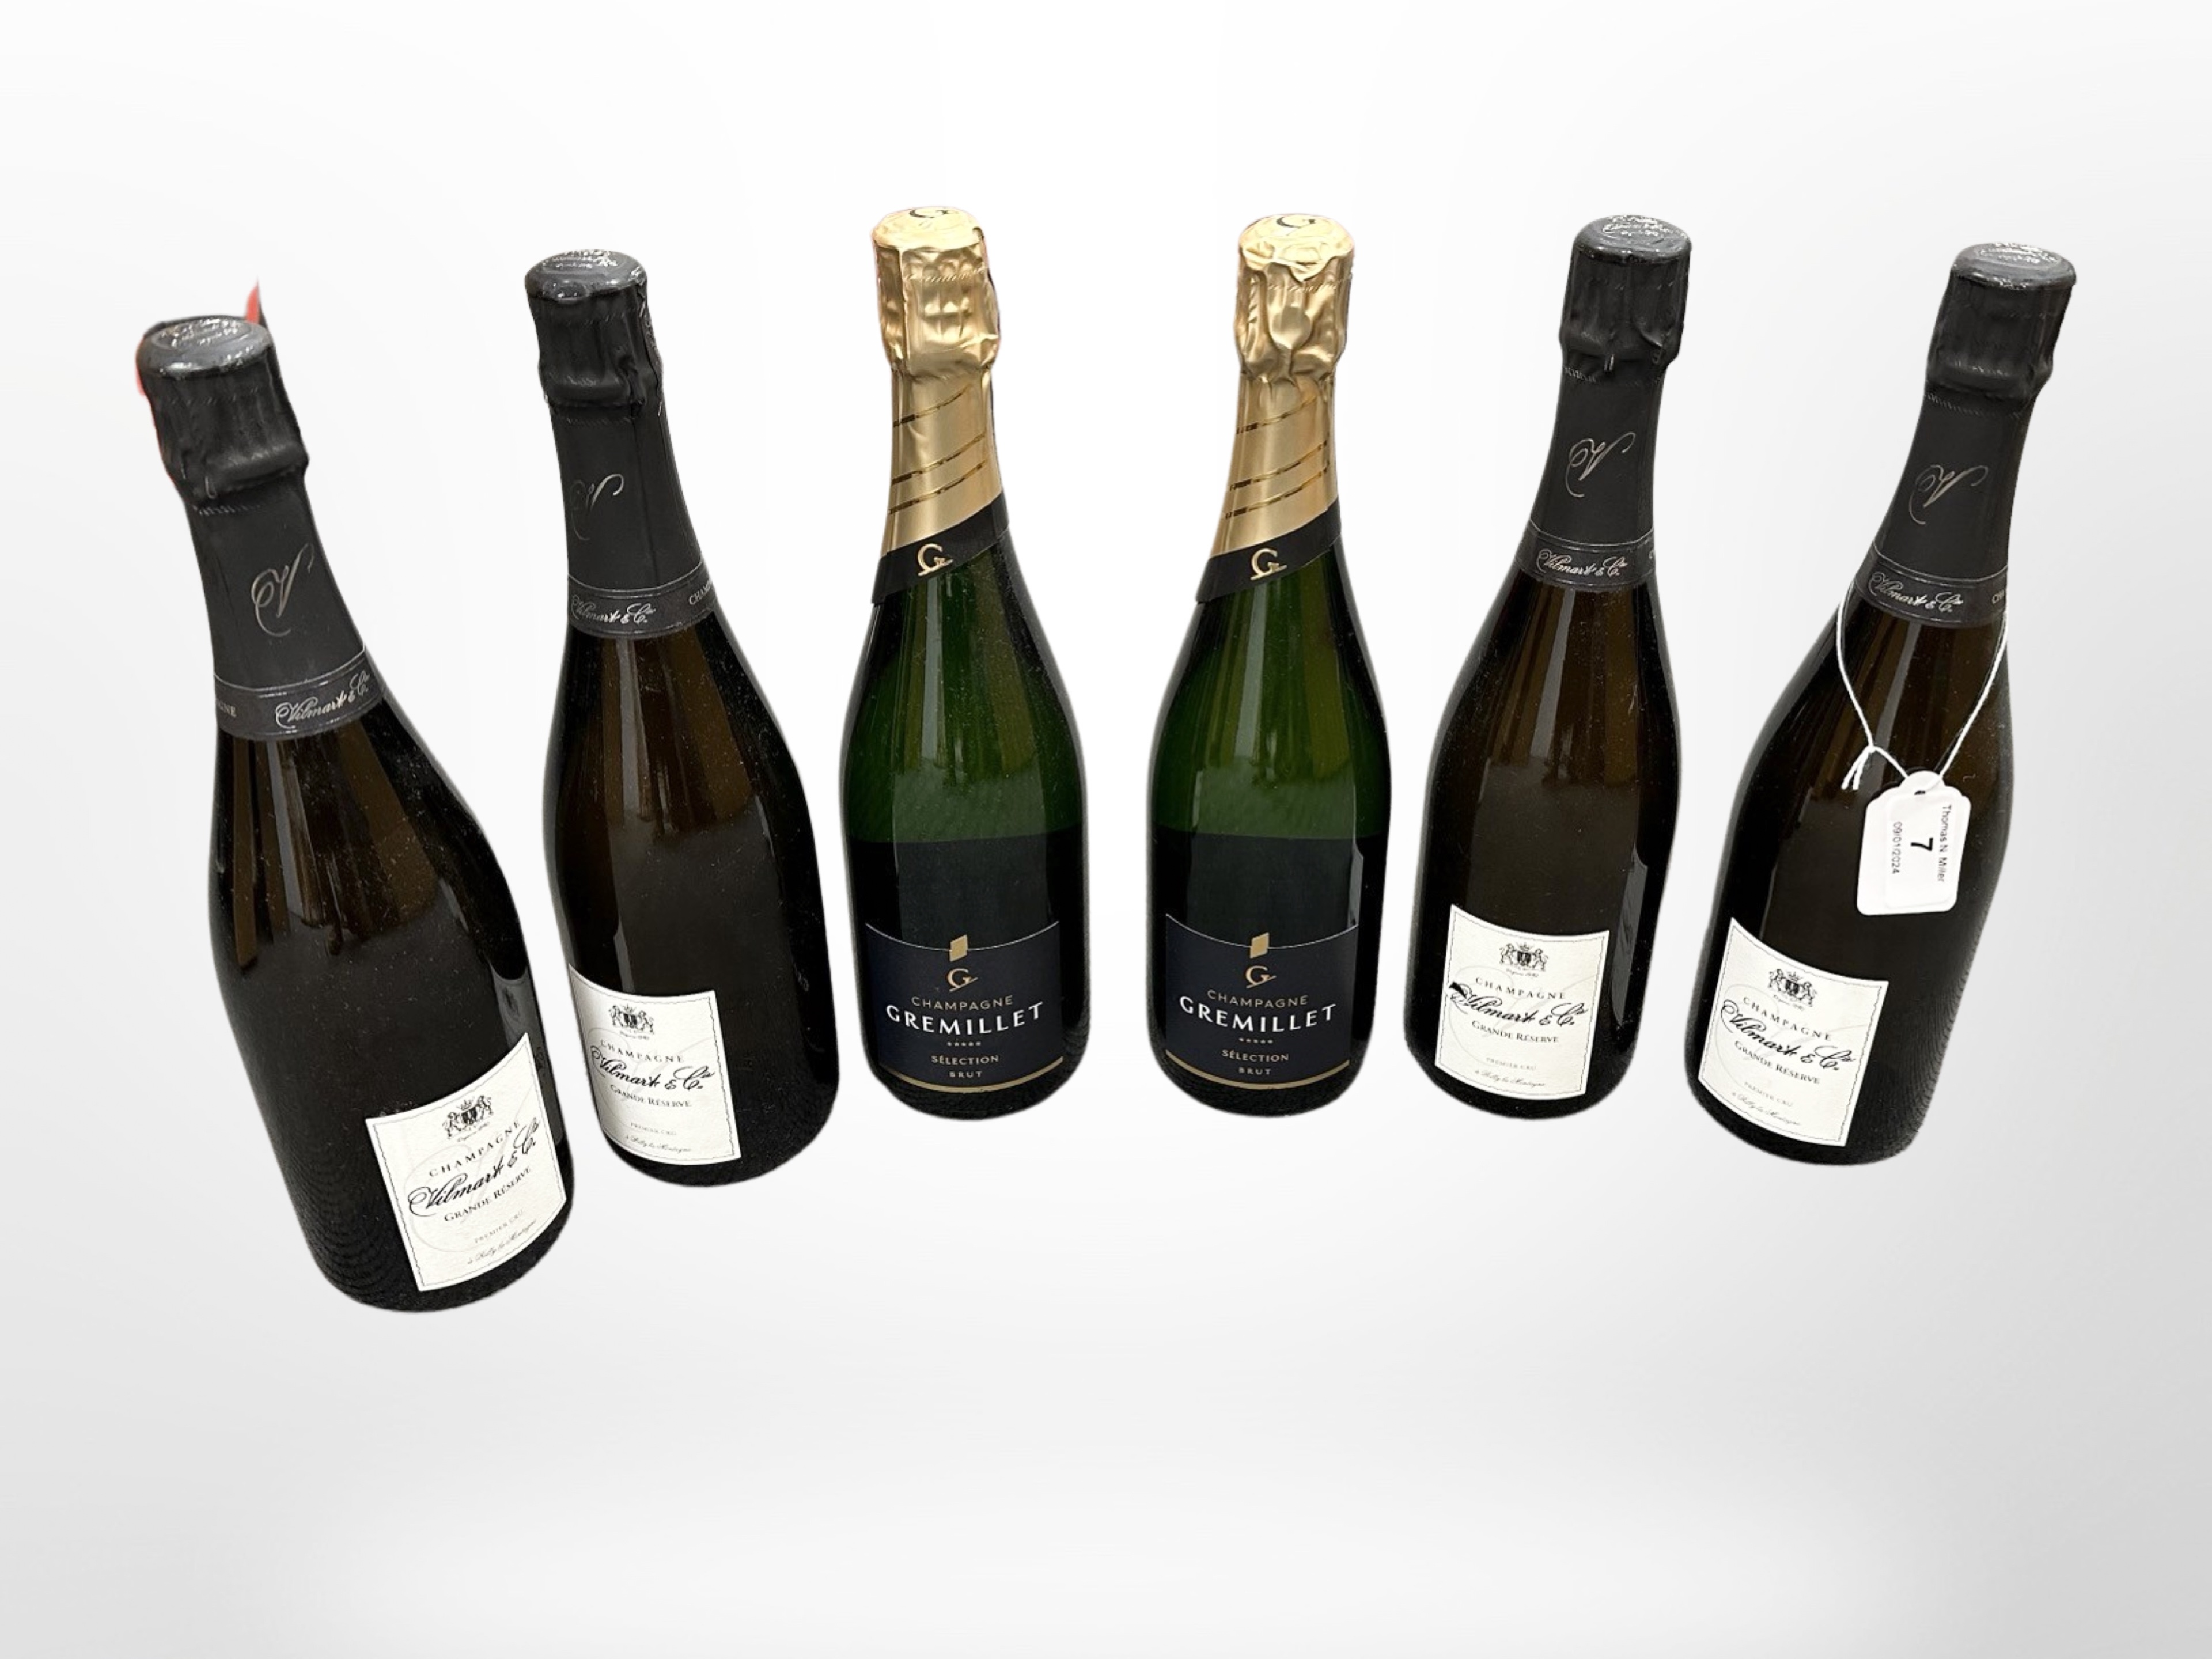 Six bottles of champagne - Gremillet Brut (2) and Vilmart & Co Grande Reserve, 750ml.